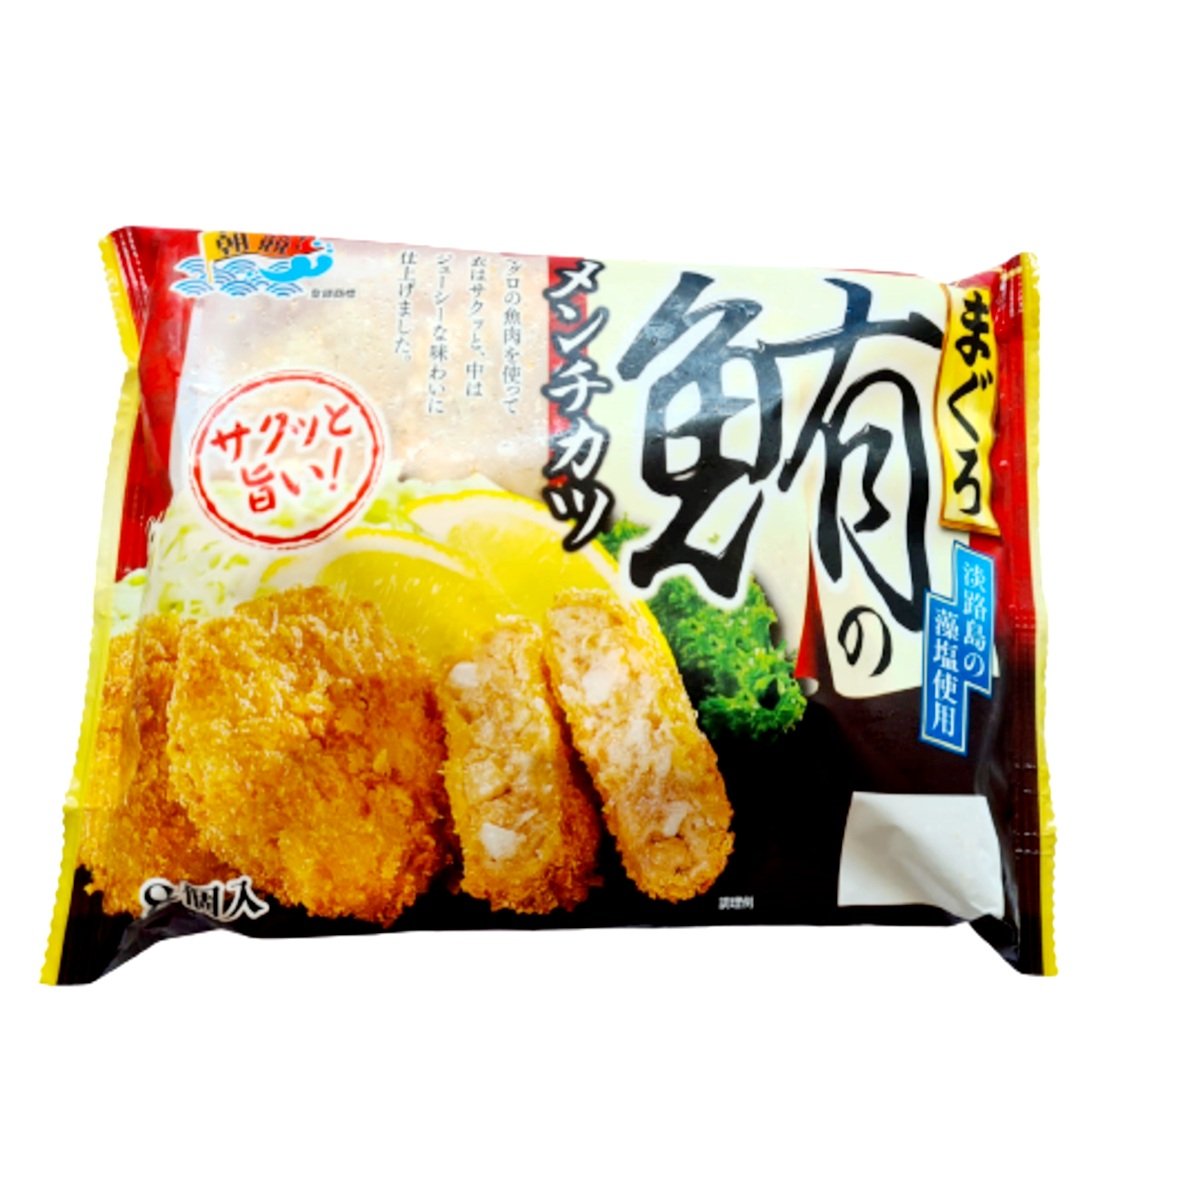 冷凍 まぐろのメンチカツ Marine Foods Maguro Menchikatsu Japanese Fried Breaded Honeydaes Japan Foods Grocery Online